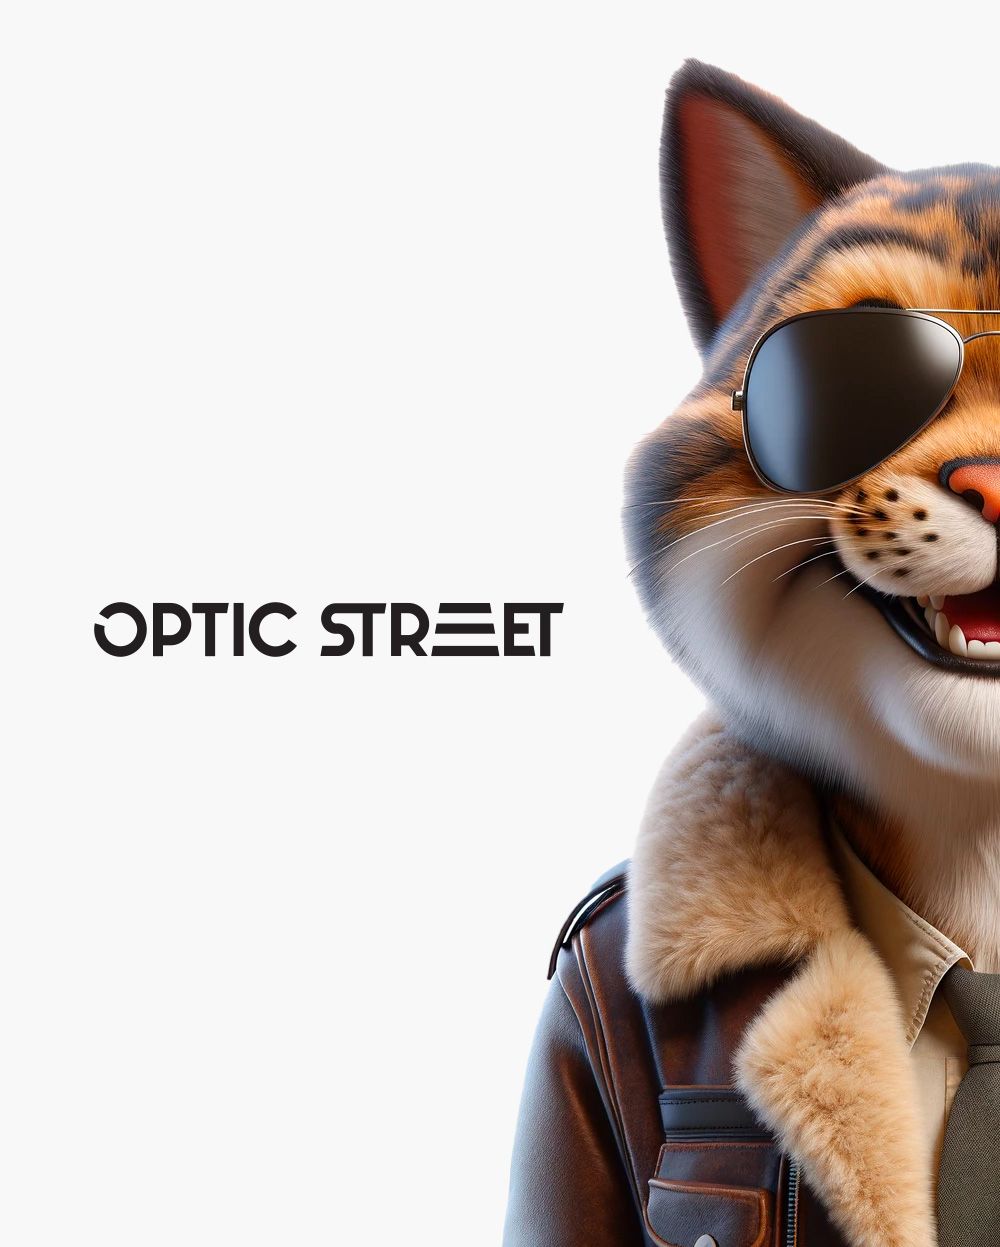 Разработка интернет-магазина Optic Street на базе «1С-Битрикс: Управление сайтом» в редакции «Малый бизнес» и готового интернет-магазина Seller. 